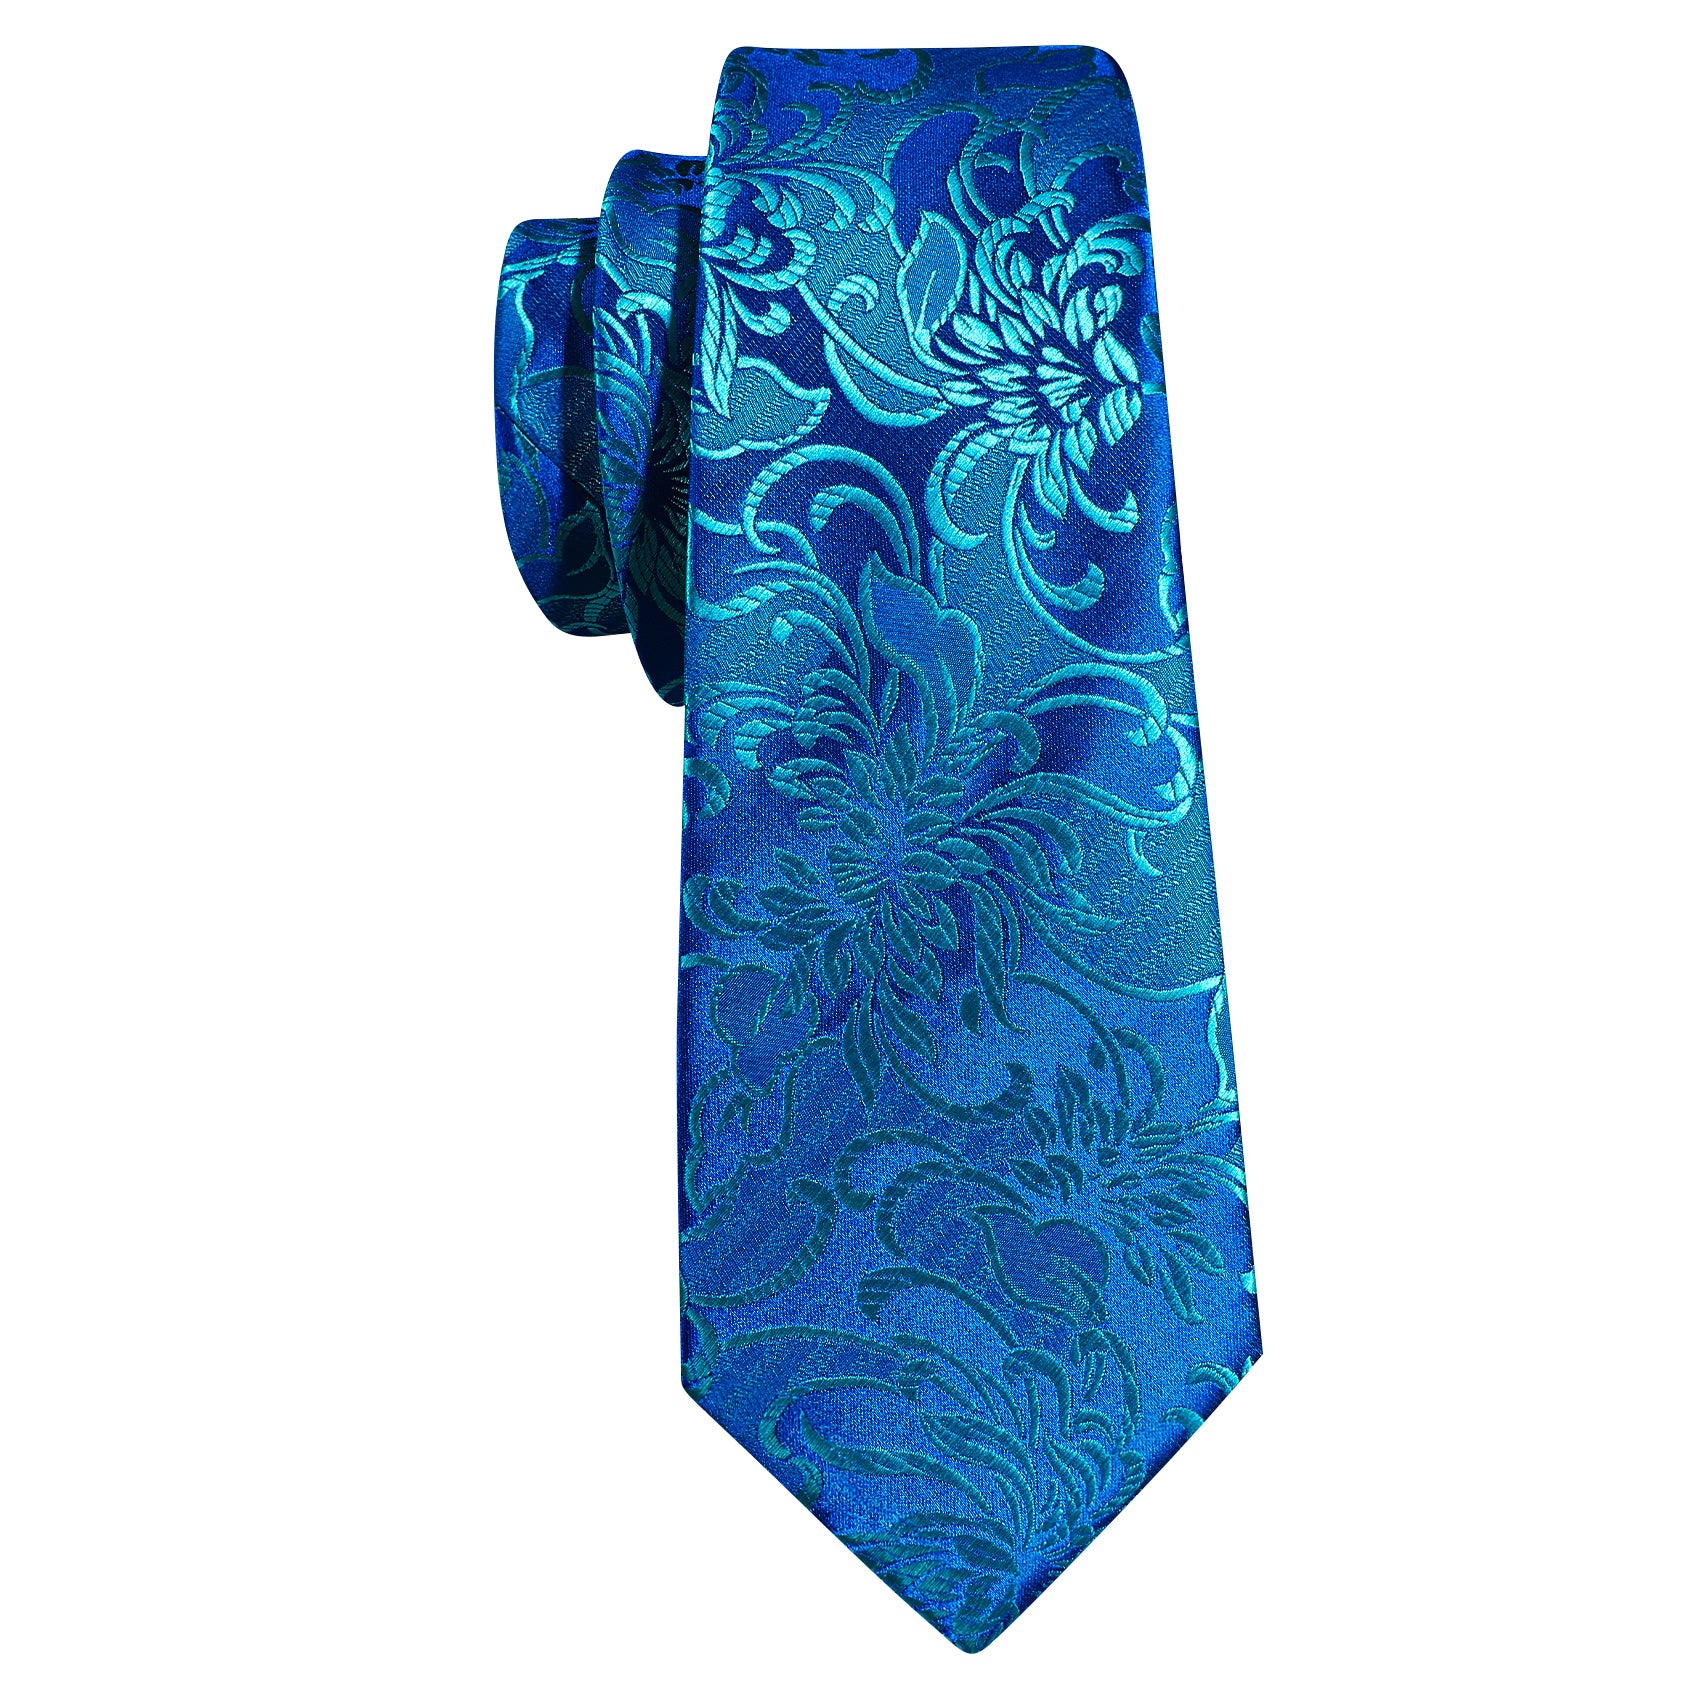 Steel Blue Flower Silk Tie Hanky Cufflinks Set